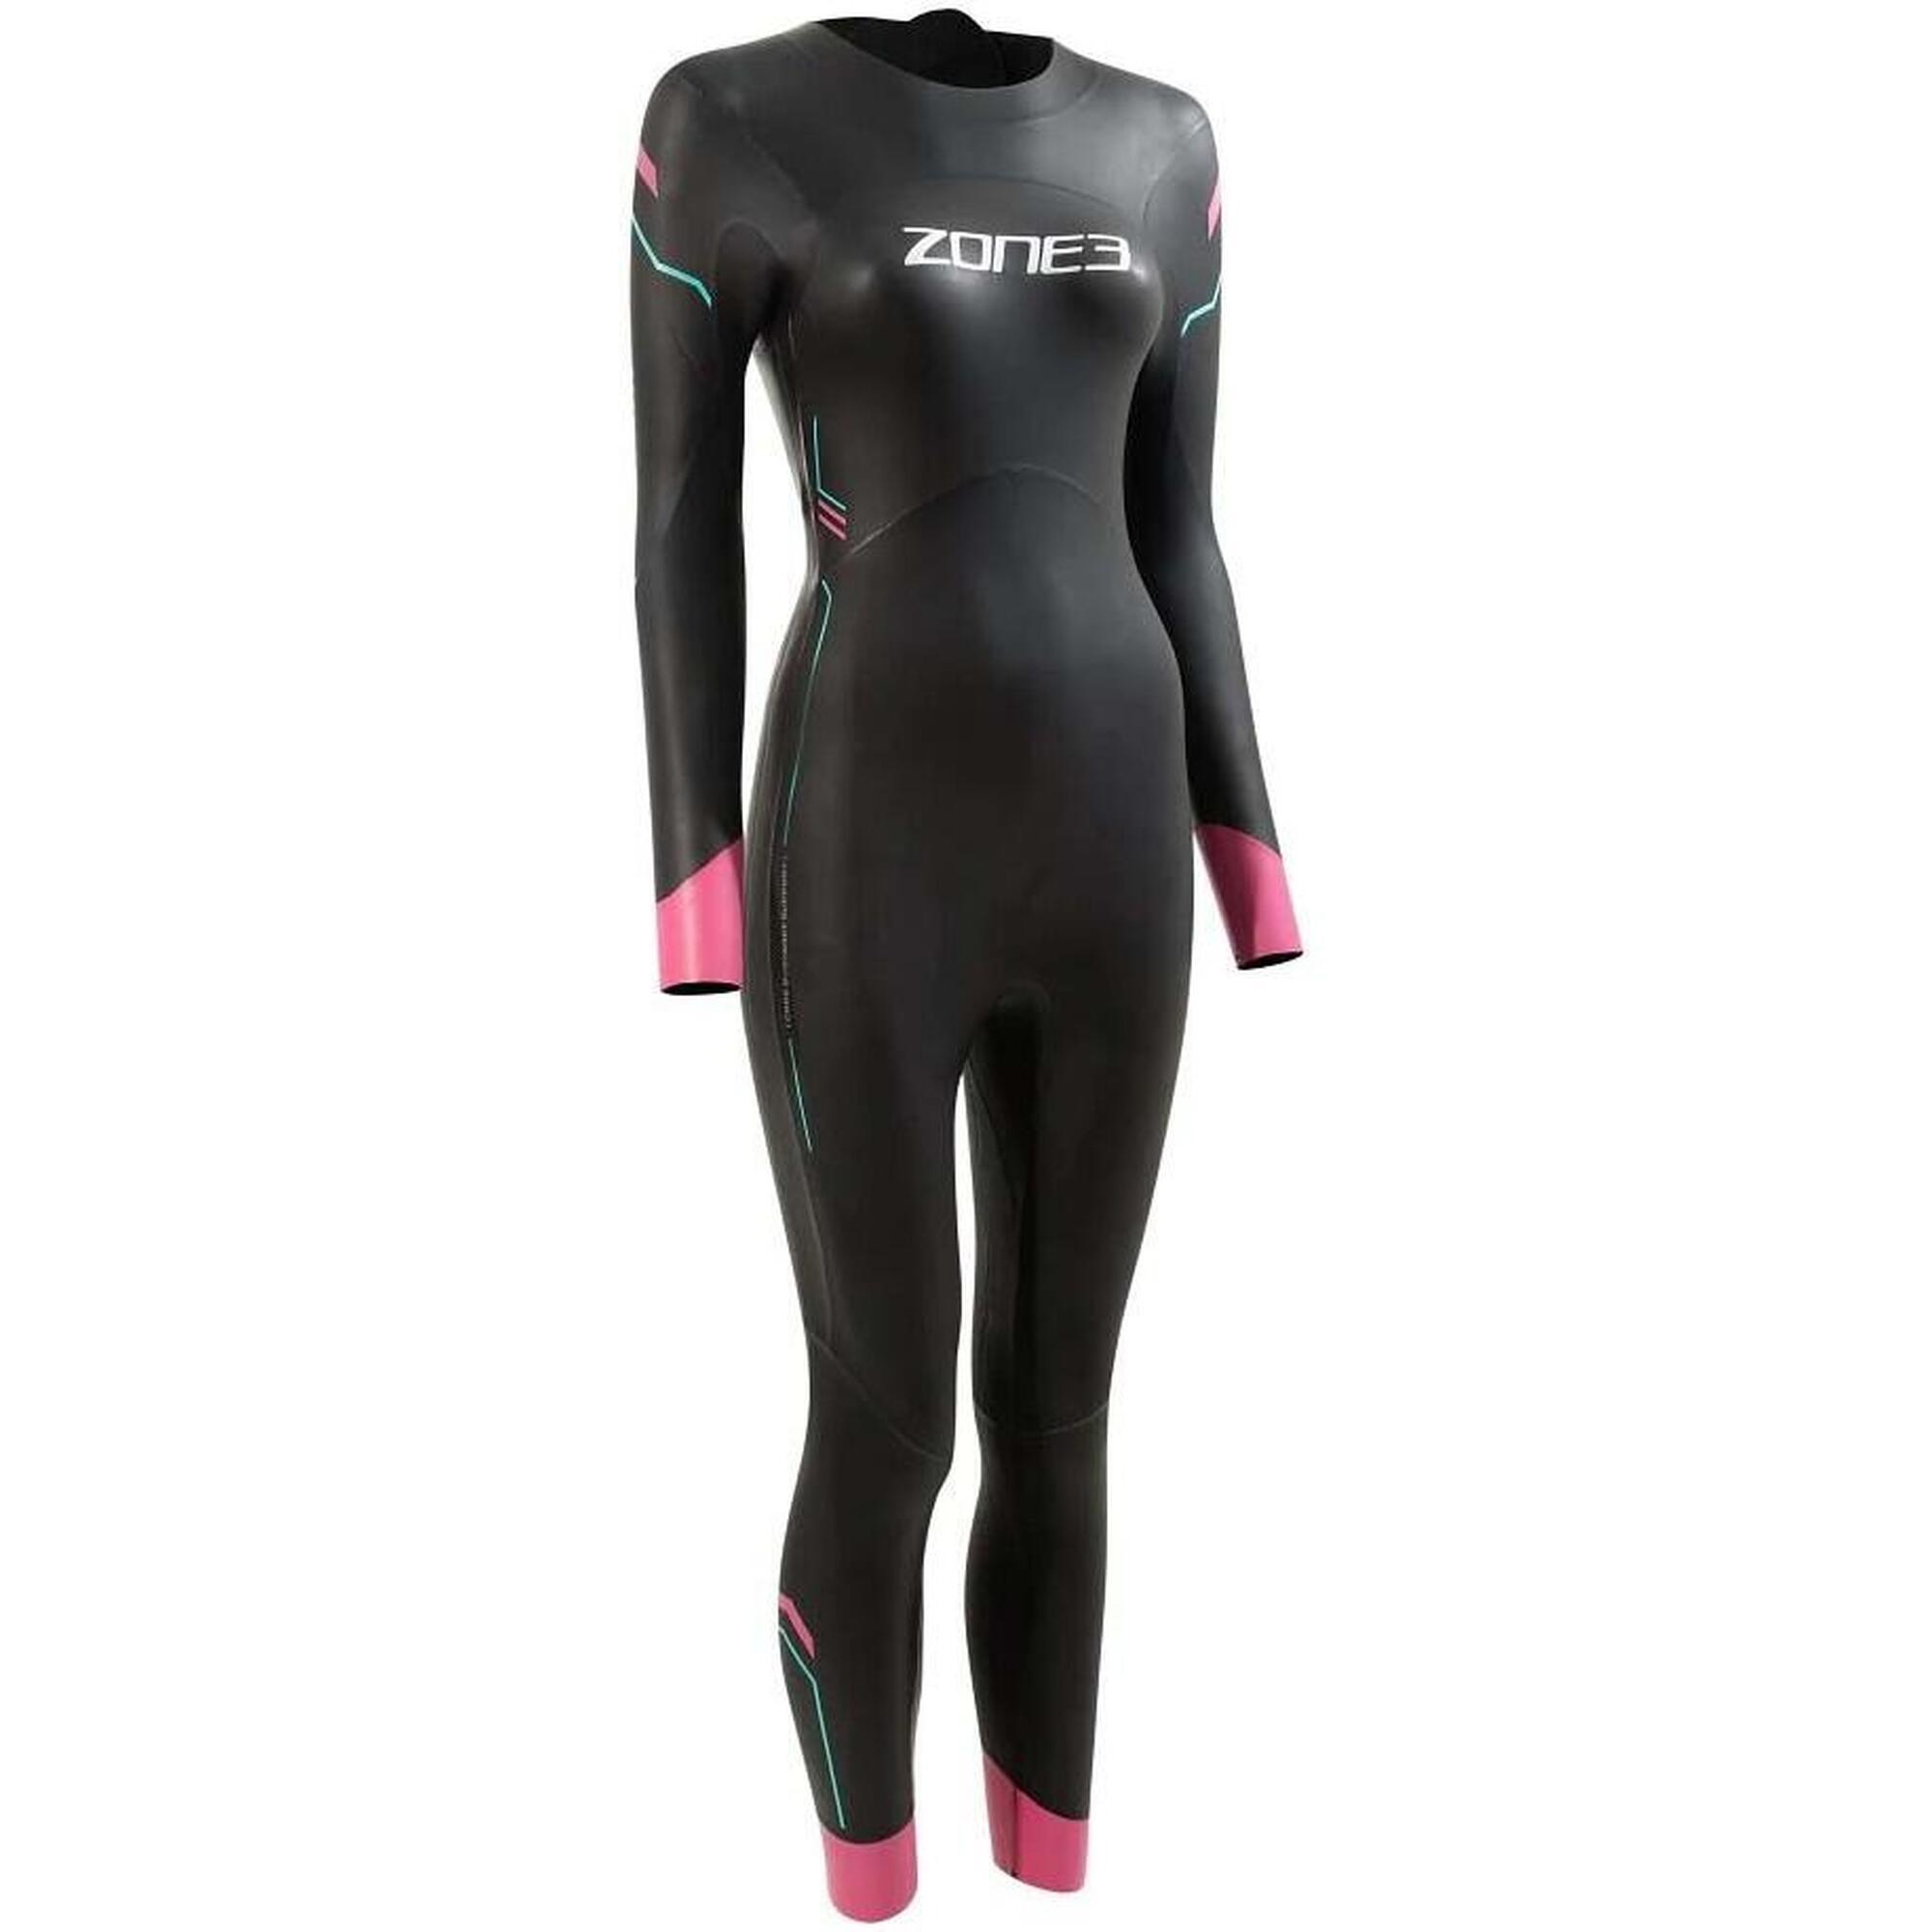 Femmes Agile Swim Combinaison Néoprène - Black / Pink / Turquoise